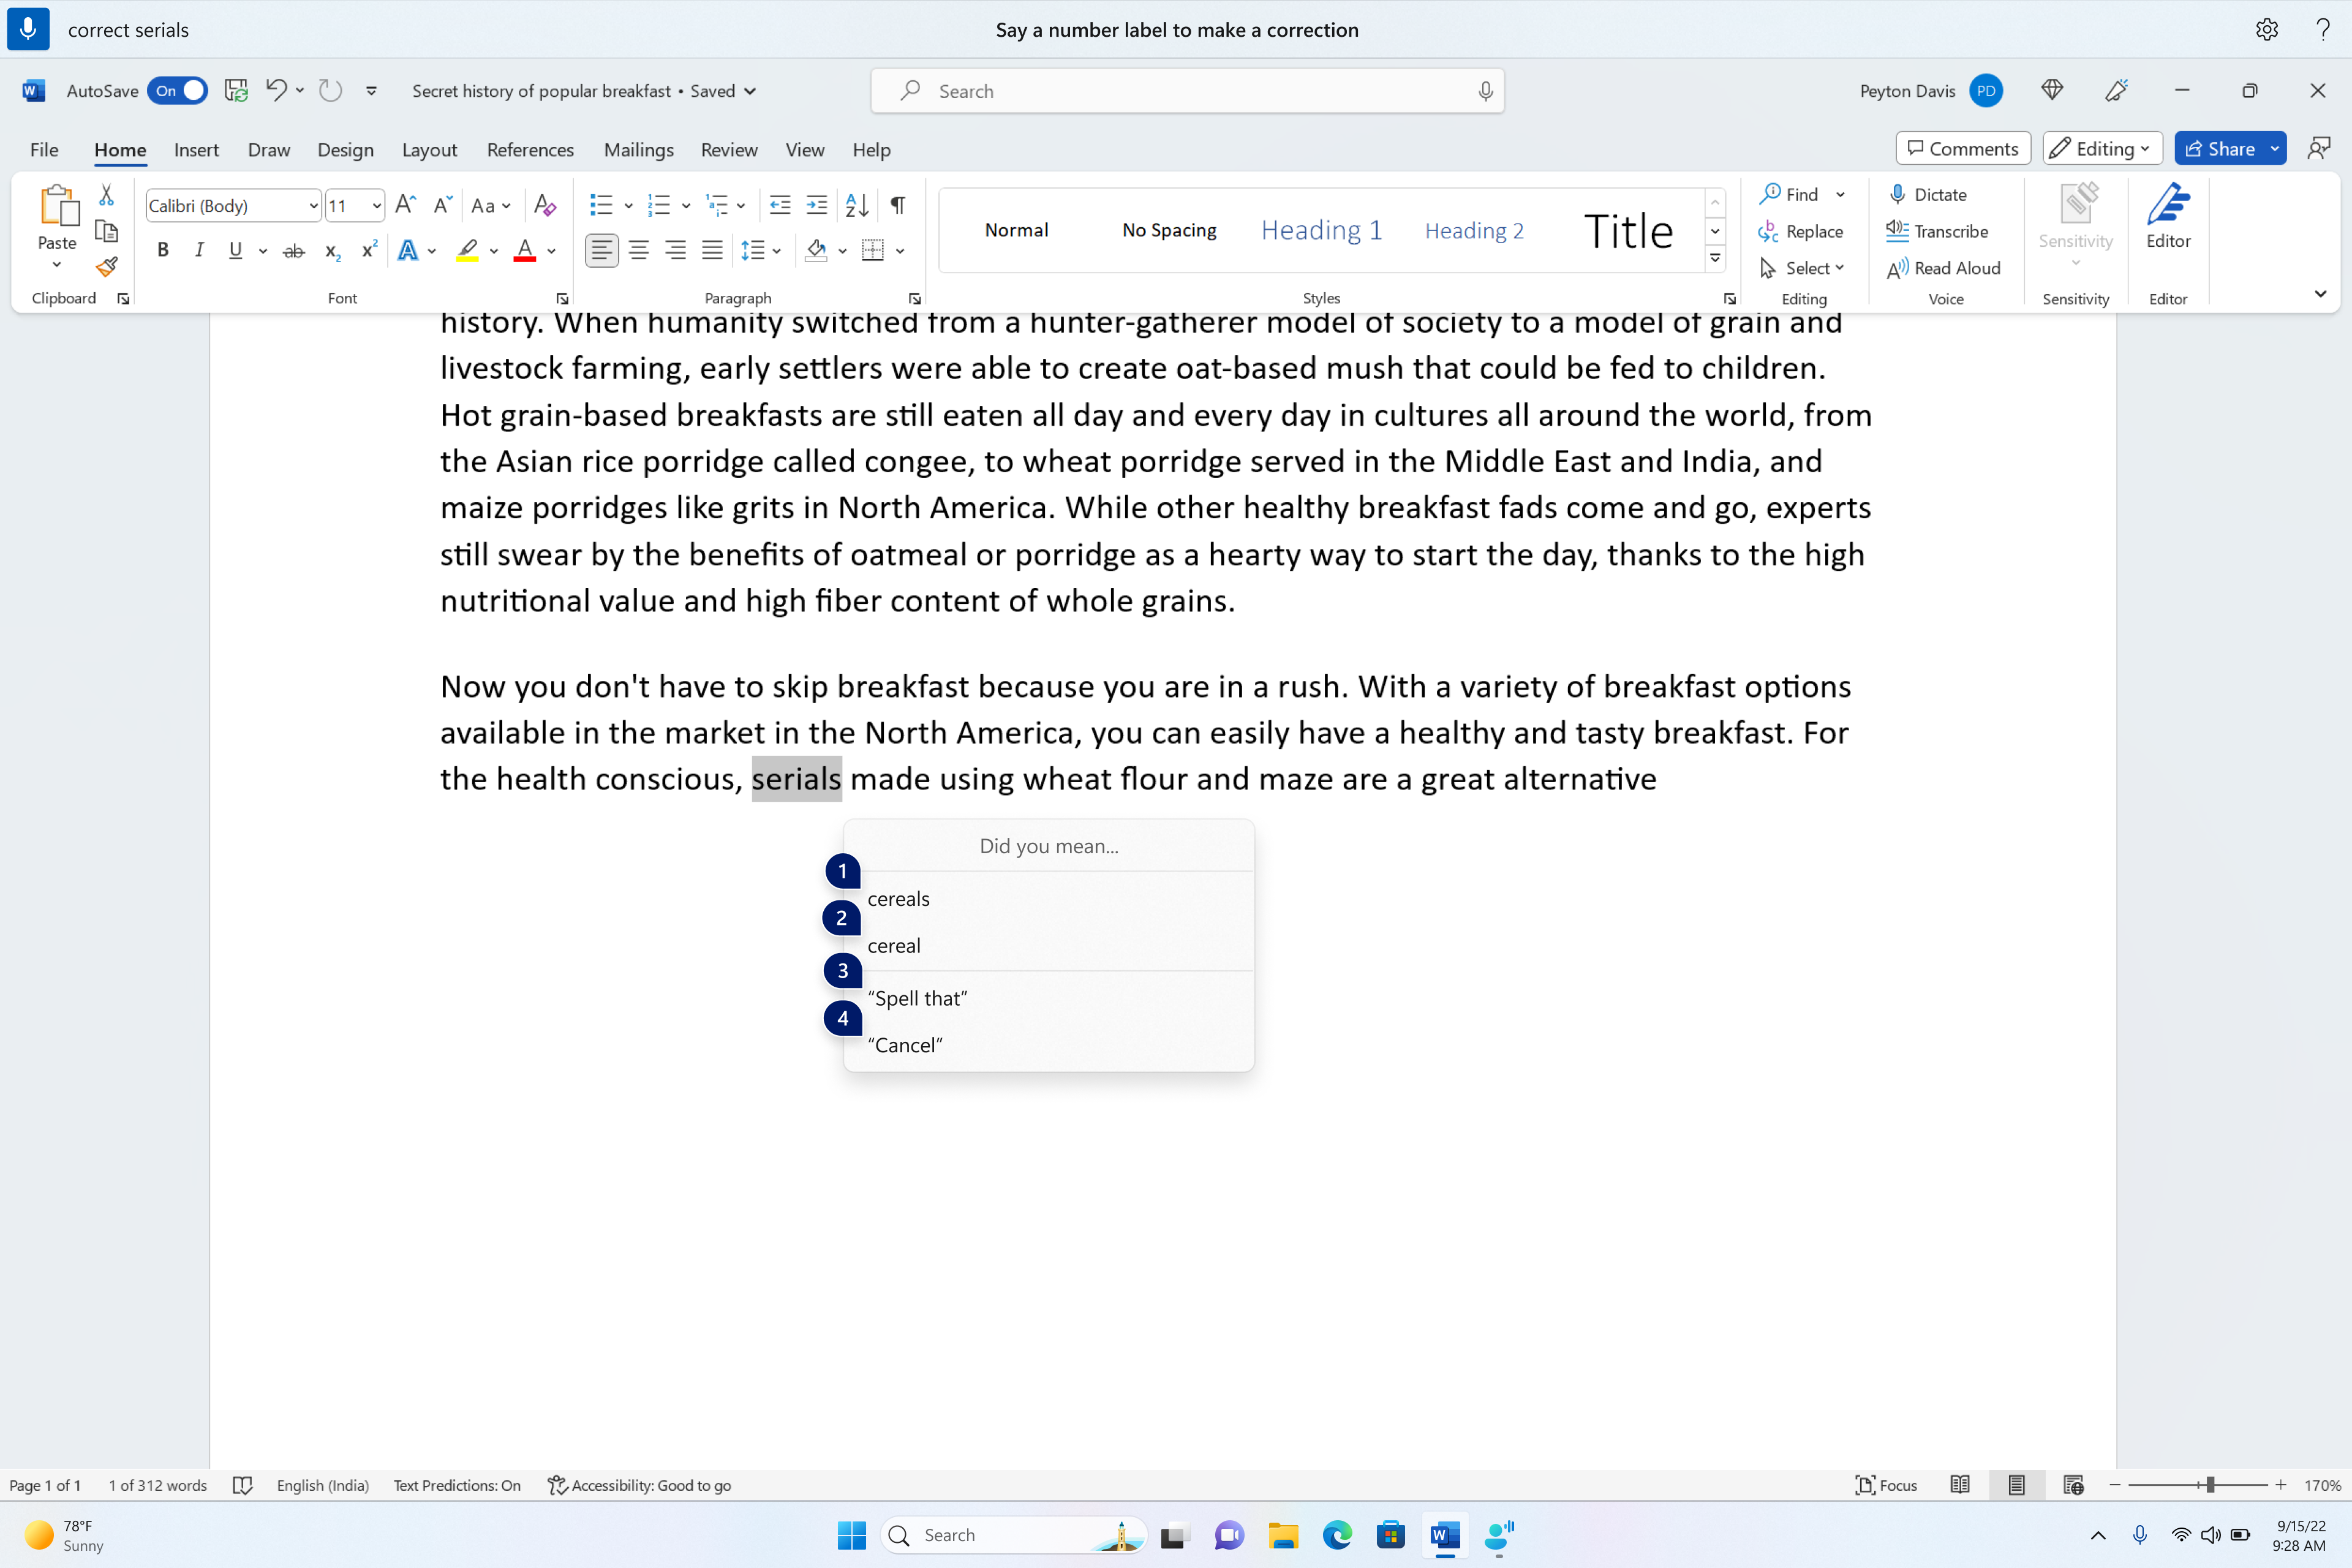 Скриншот документа Word, редактируемого с помощью голосового доступа.  Пользователь использовал команду для исправления набранного слова, а голосовой доступ отображает предложения по замене указанного слова.